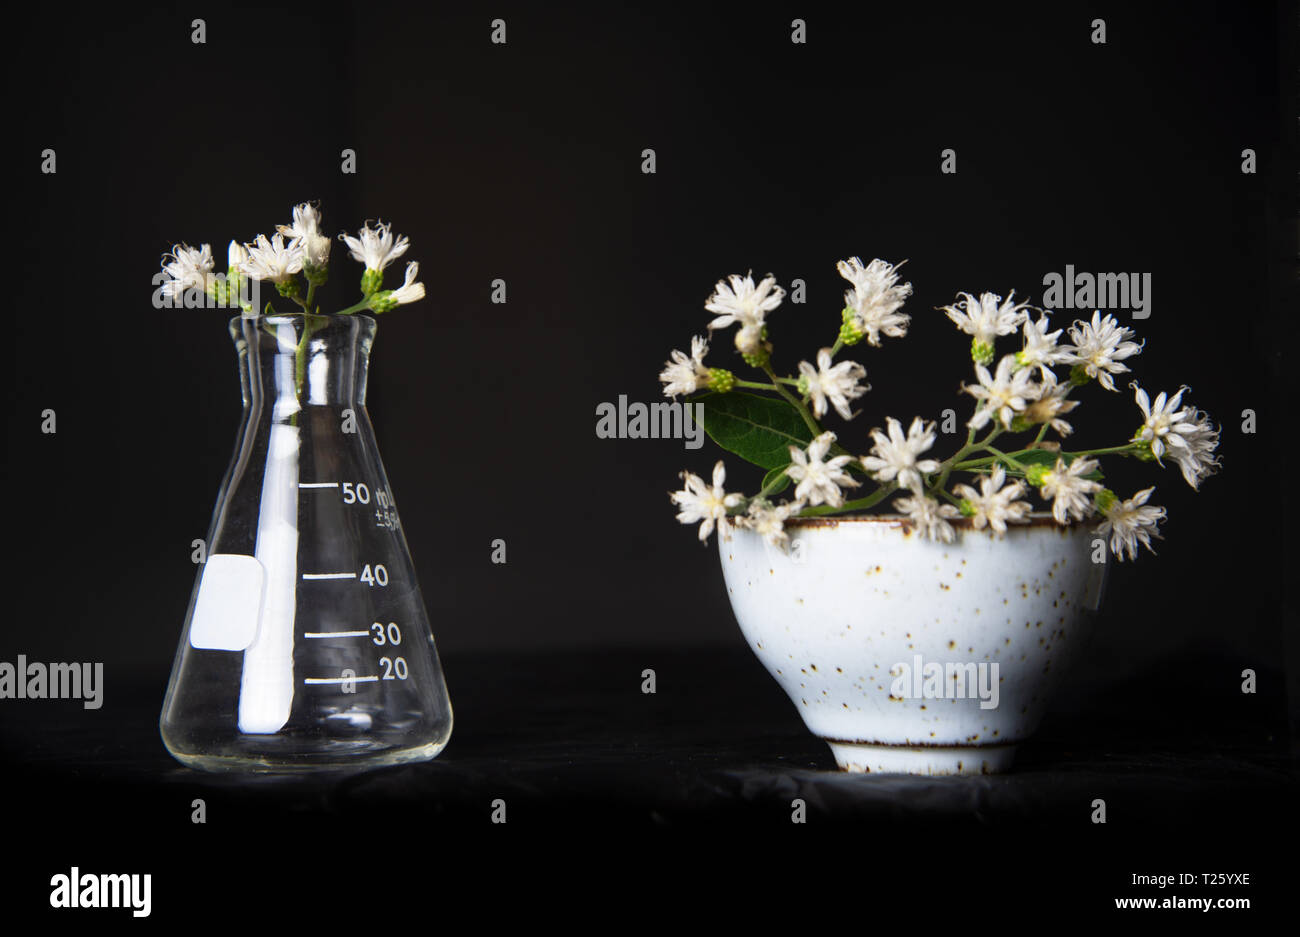 La science avec un flacon de verre avec fleur tasse en céramique dans vintsge encore rococo style de vie sur fond noir Banque D'Images